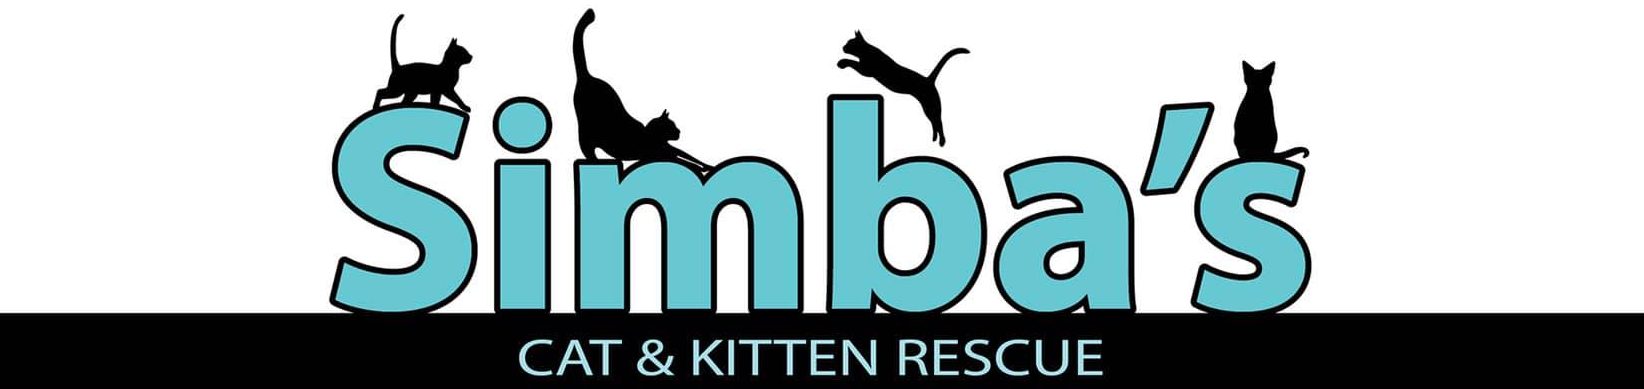 Simba's Cat & Kitten Rescue